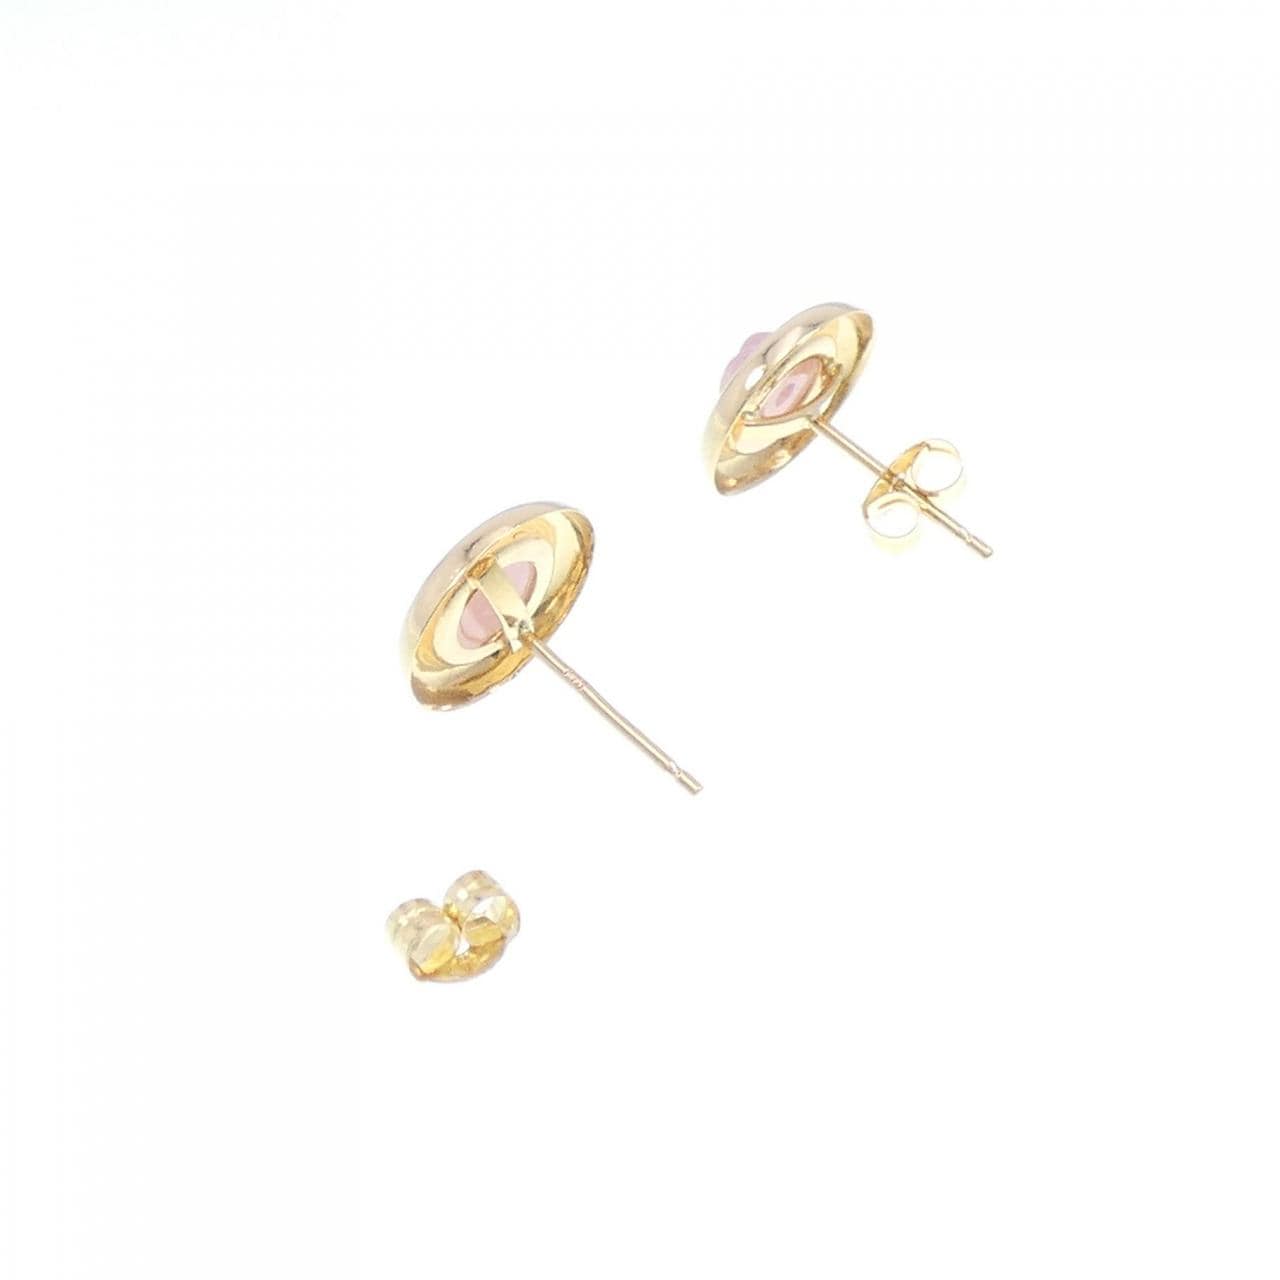 K18YG rhodochrosite earrings